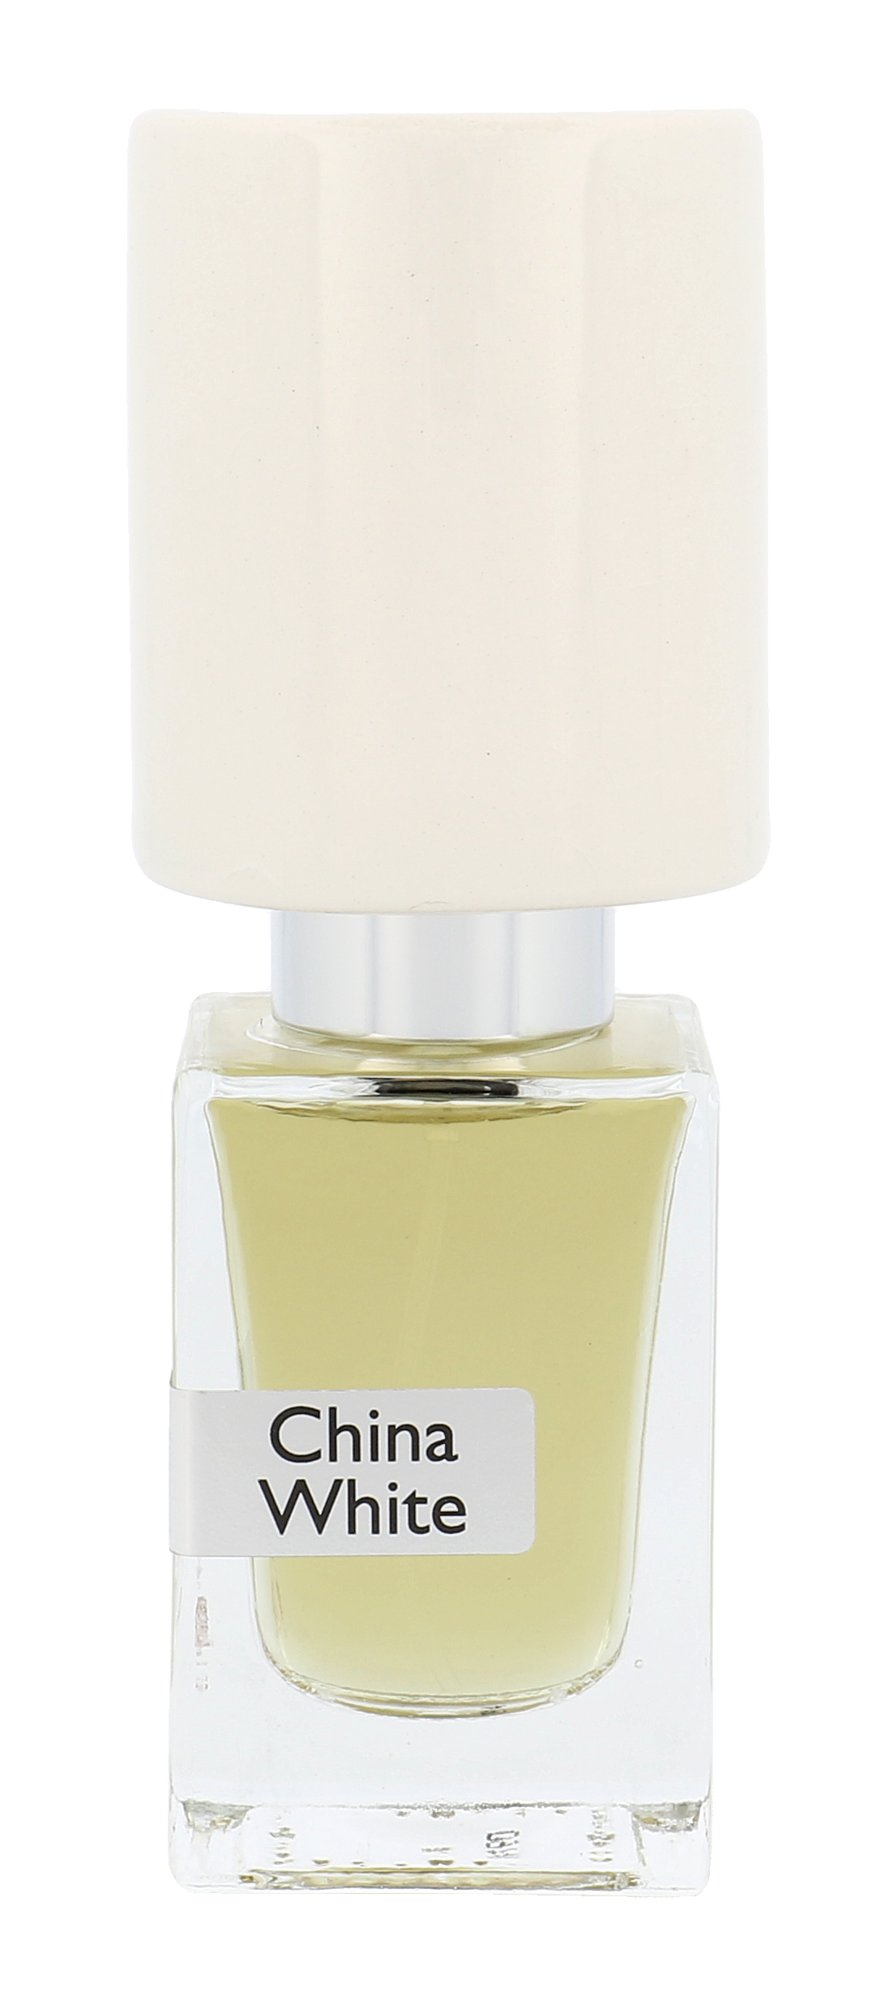 Nasomatto China White, Parfum 30ml - Teszter